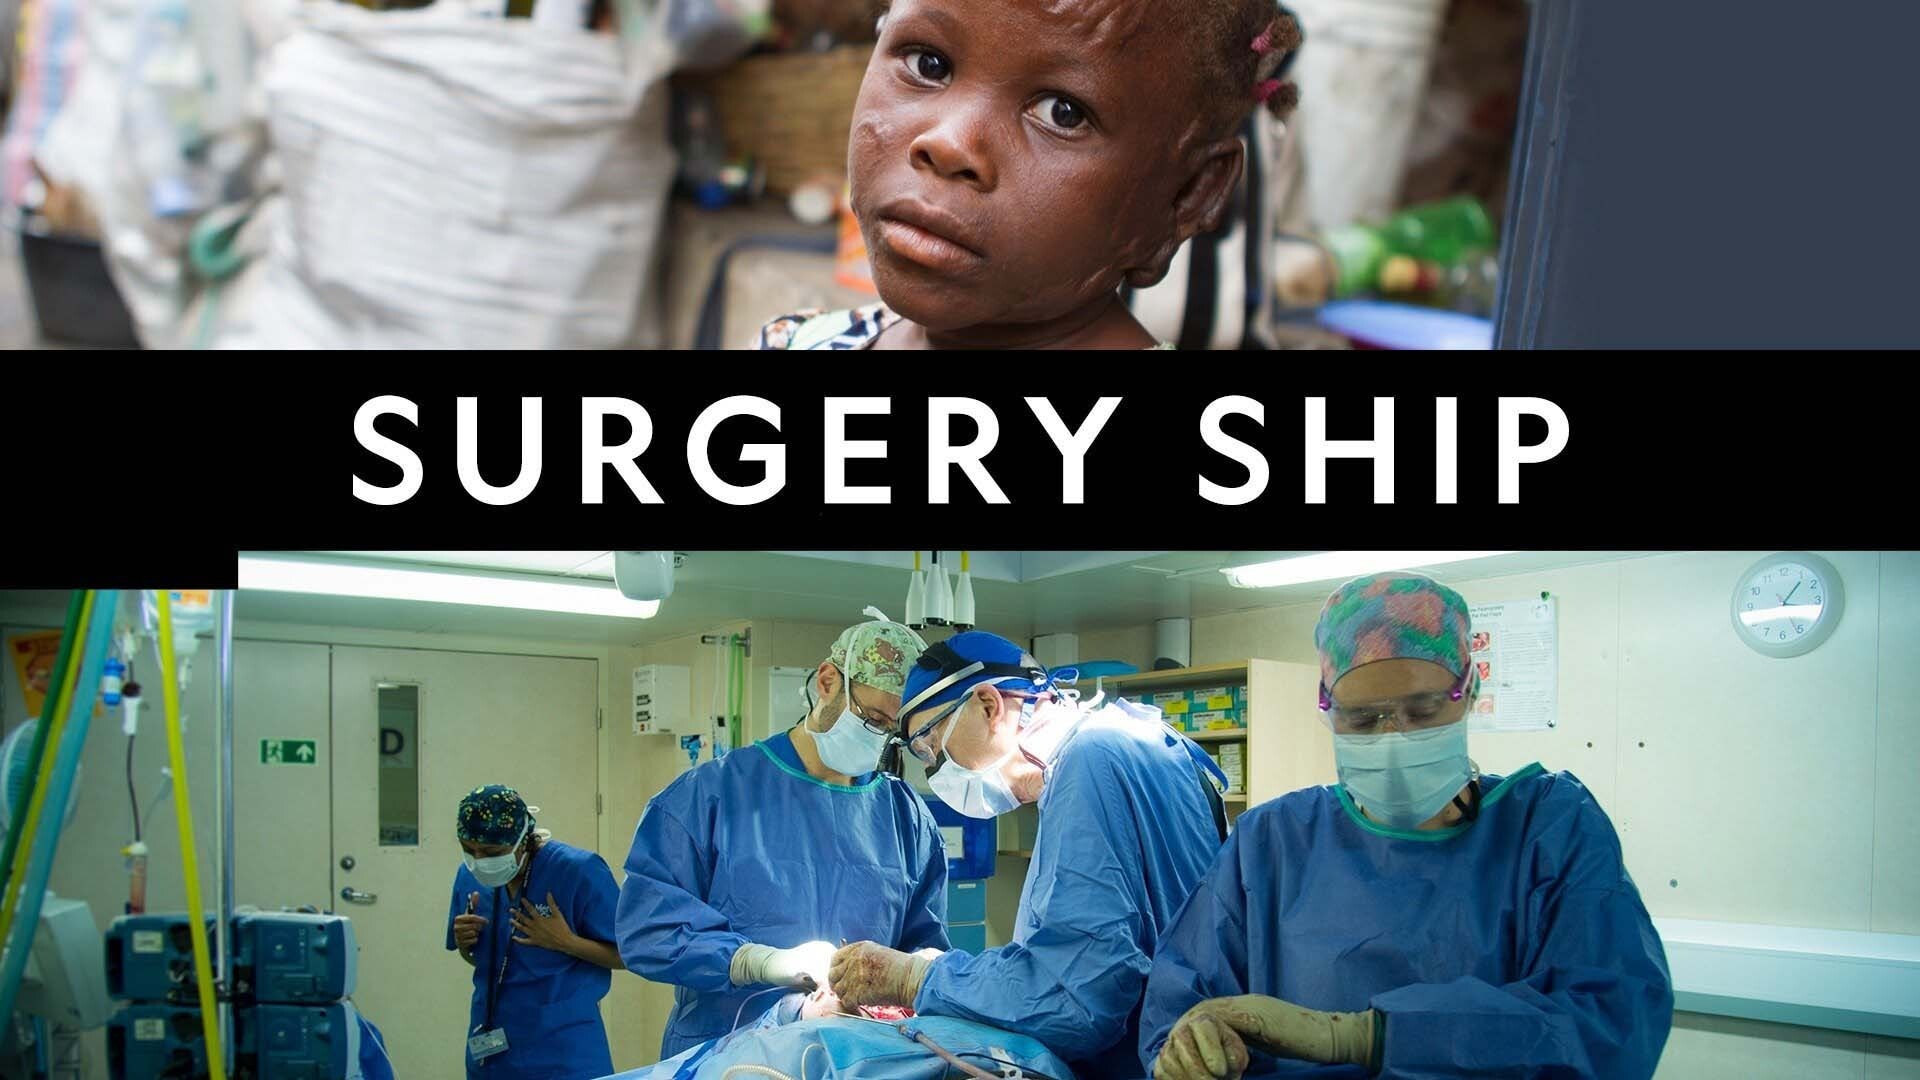 The Surgery Ship